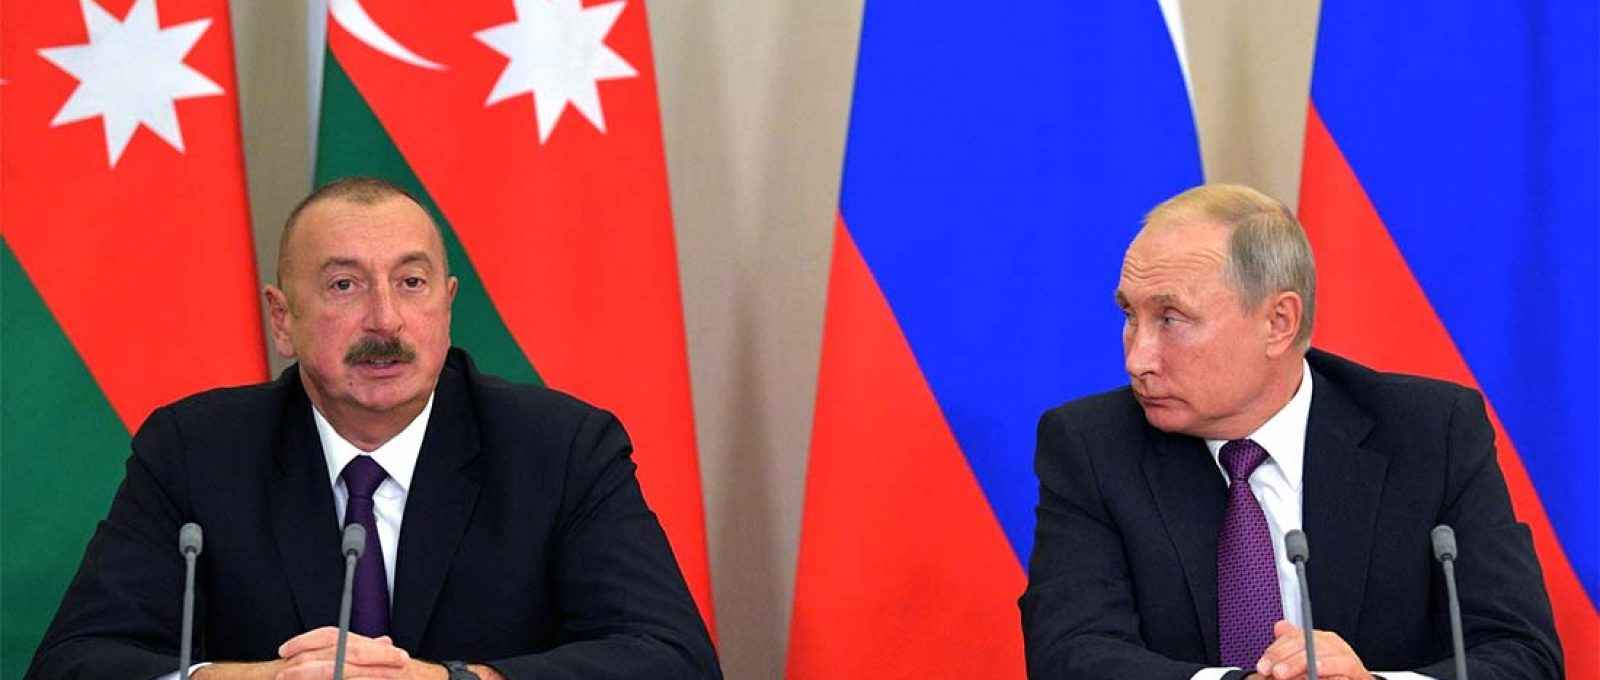 Os presidentes do Azerbaijão, Ilham Aliyev (esq.), e da Rússia, Vladimir Putin (dir.), durante conversações em Sochi, na Rússia, em setembro de 2018 (Presidência da Federação Russa).